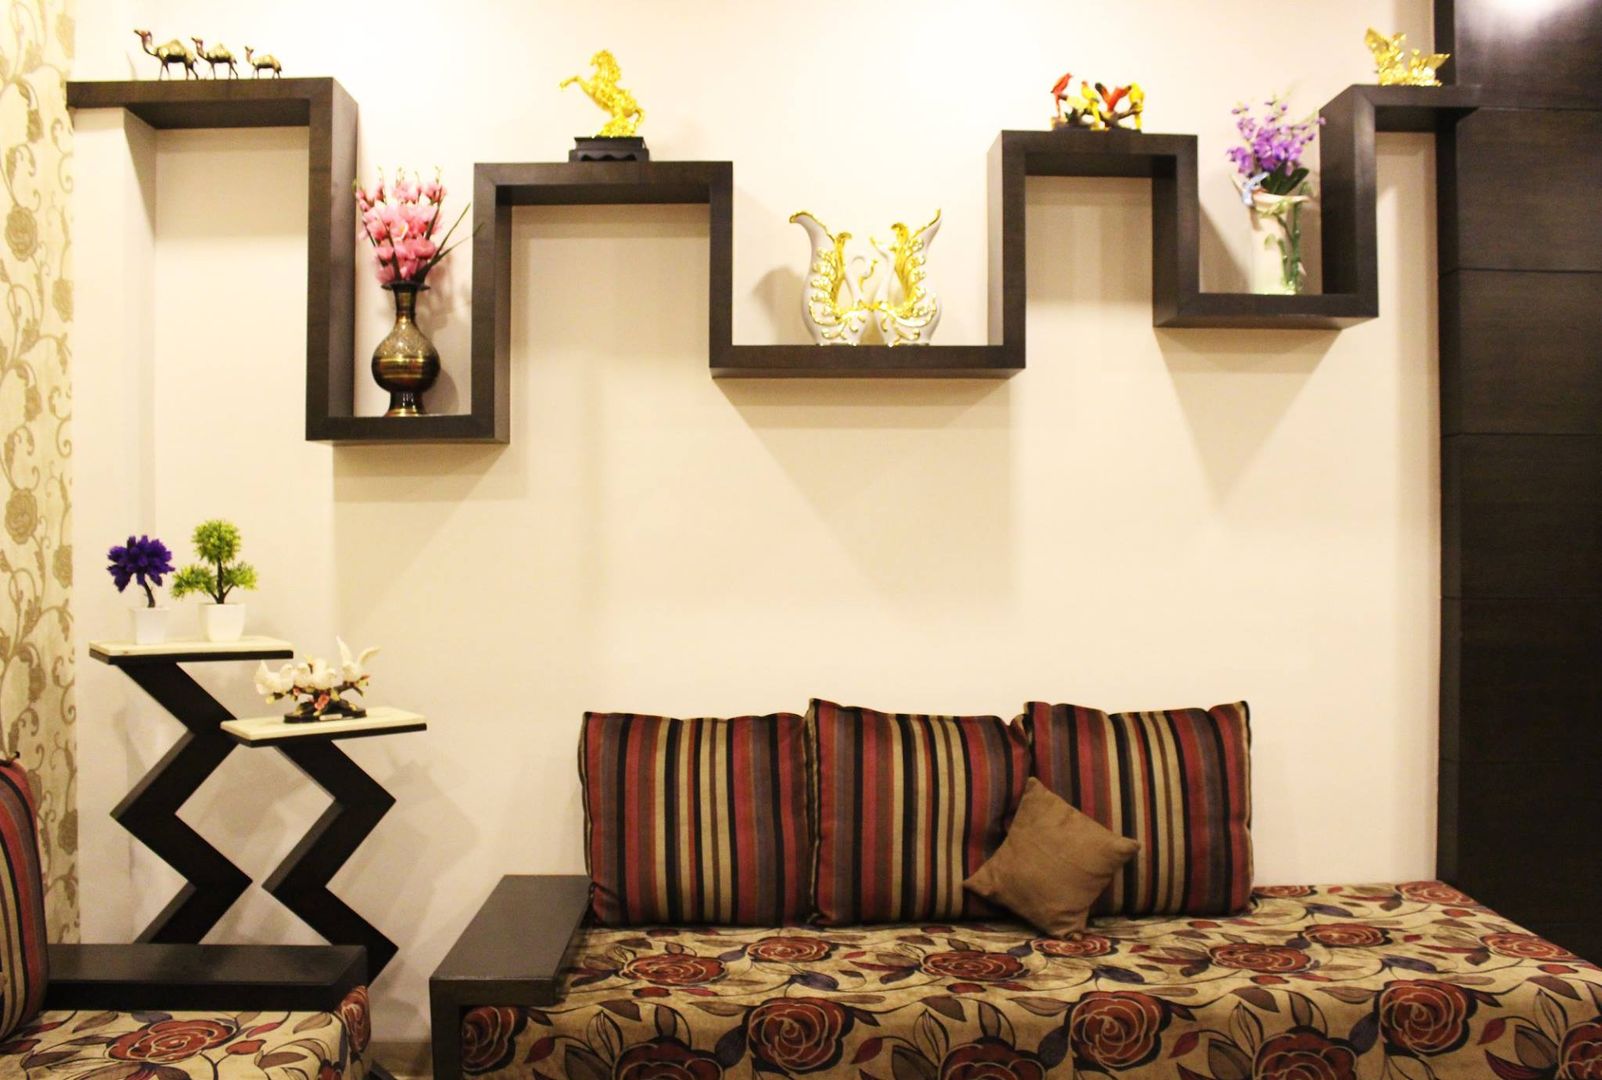 Duplex in Indore, Shadab Anwari & Associates. Shadab Anwari & Associates. Salas de estar asiáticas